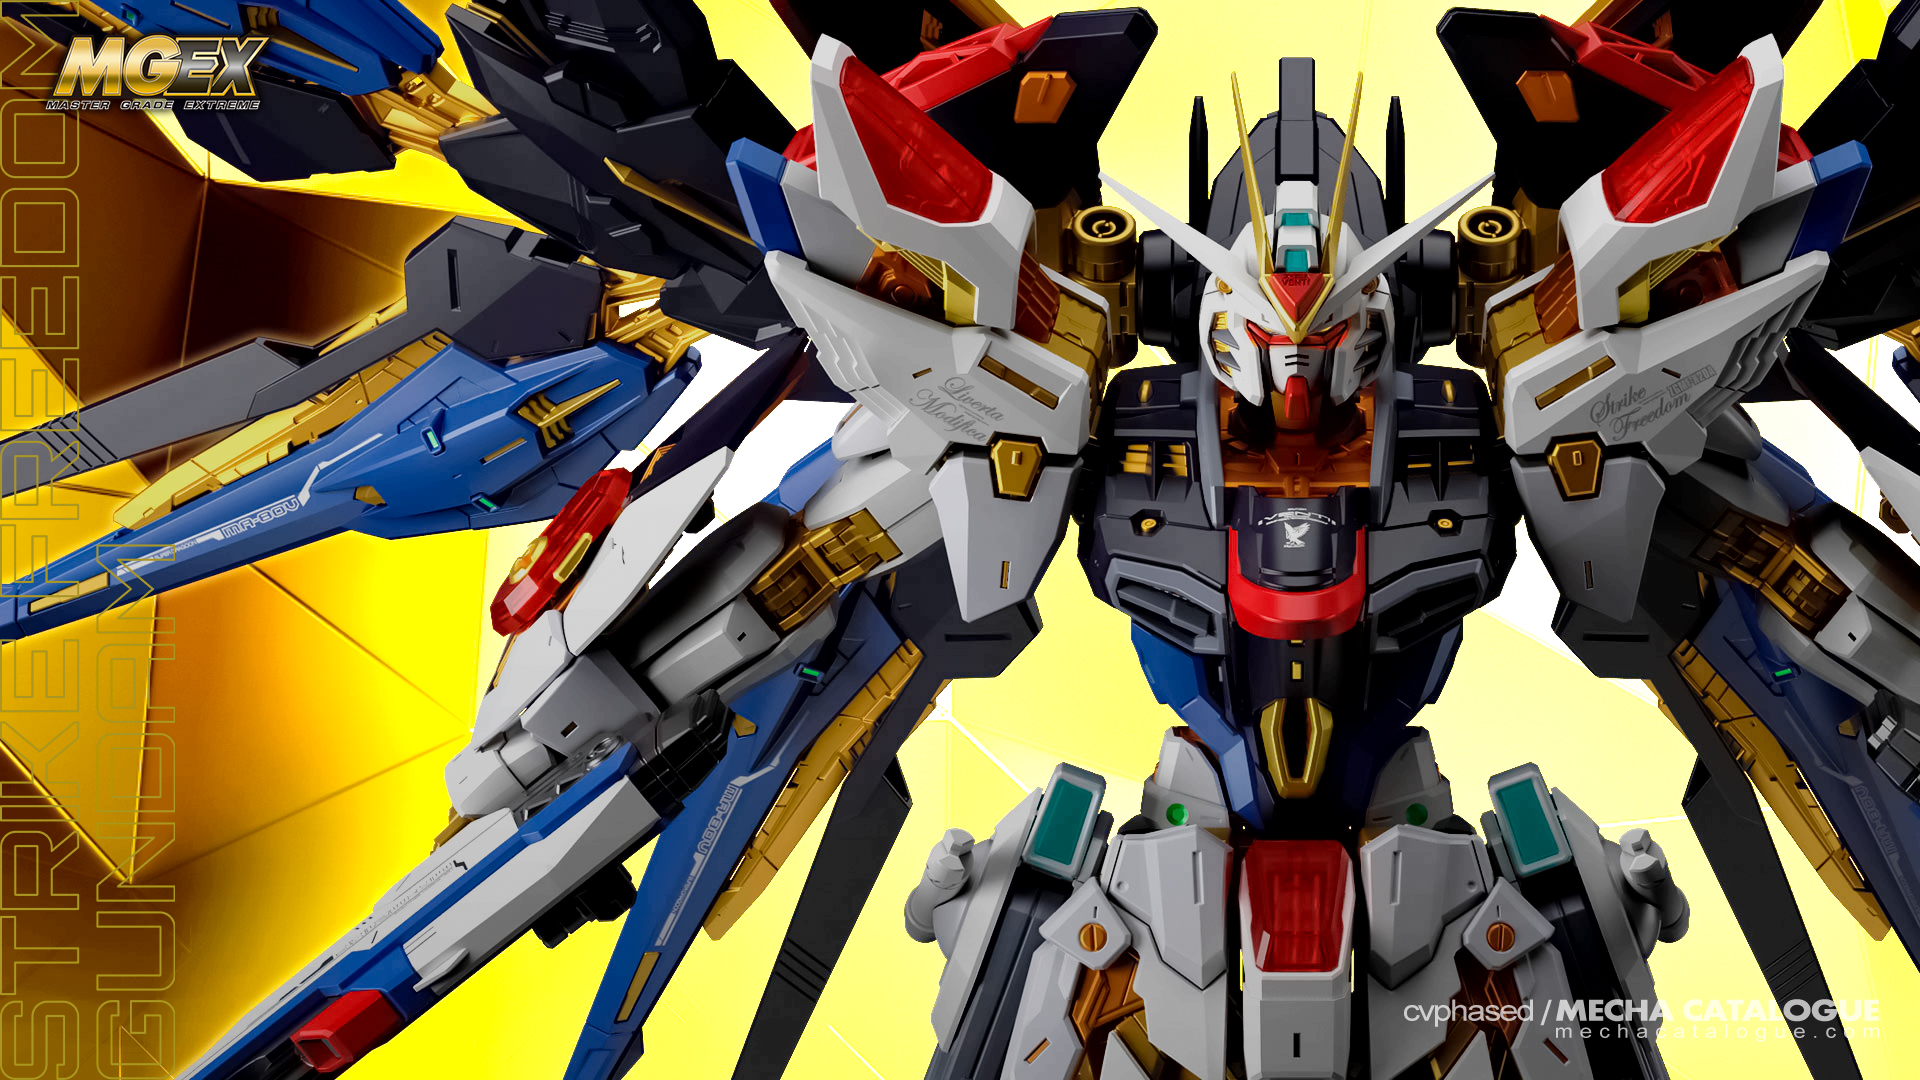 So Shiny! MGEX Strike Freedom Gundam – cvphased / MECHA CATALOGUE